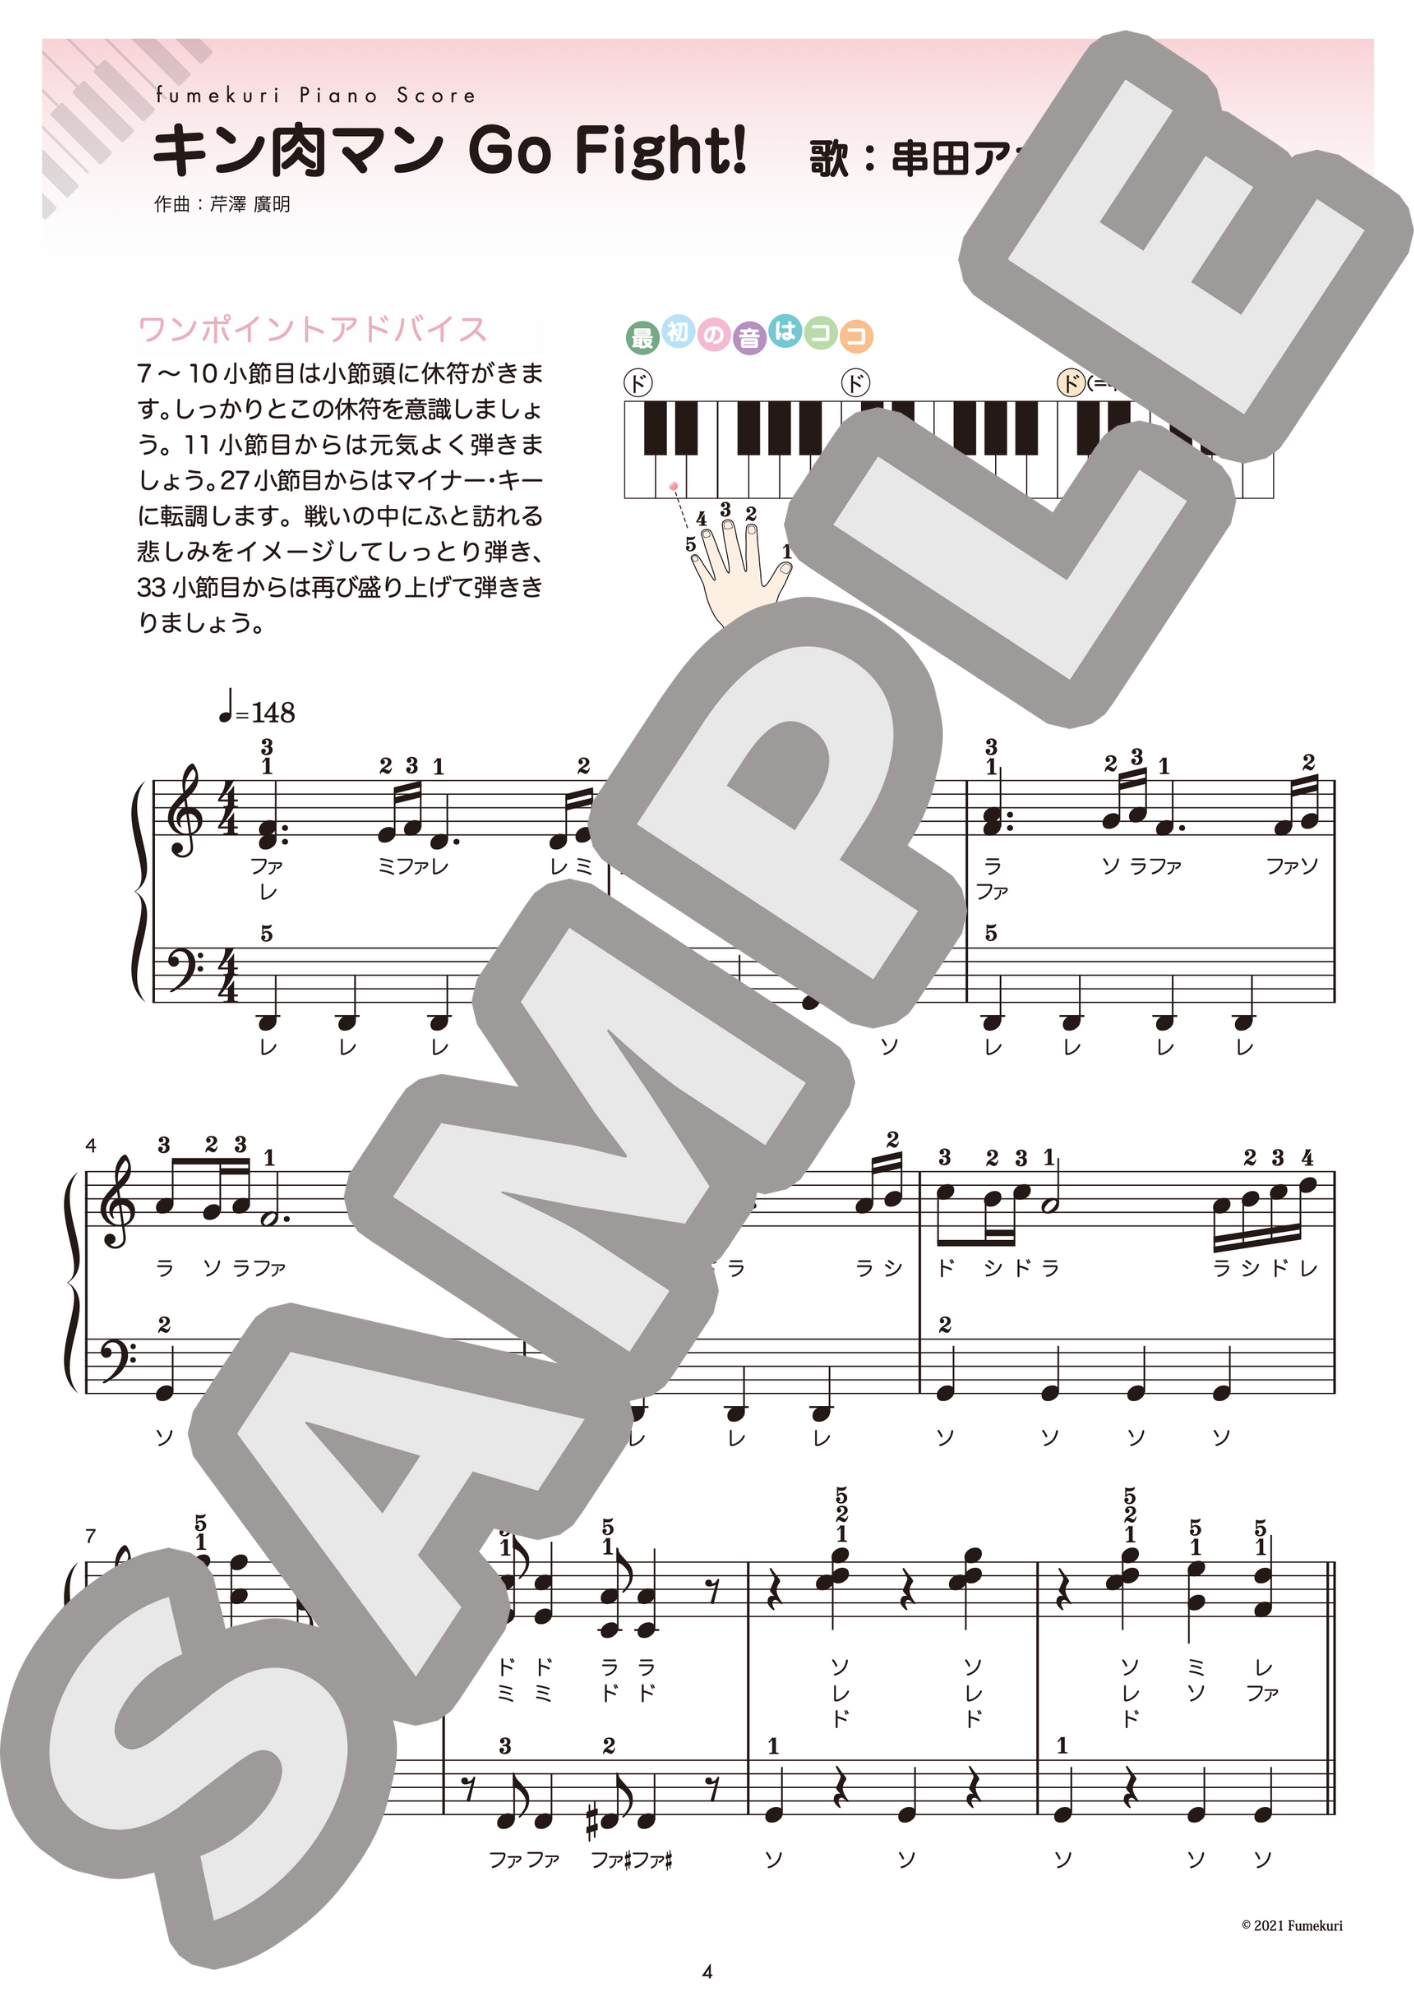 【ピアノ・ソロ初級】1980年代アニメソング集